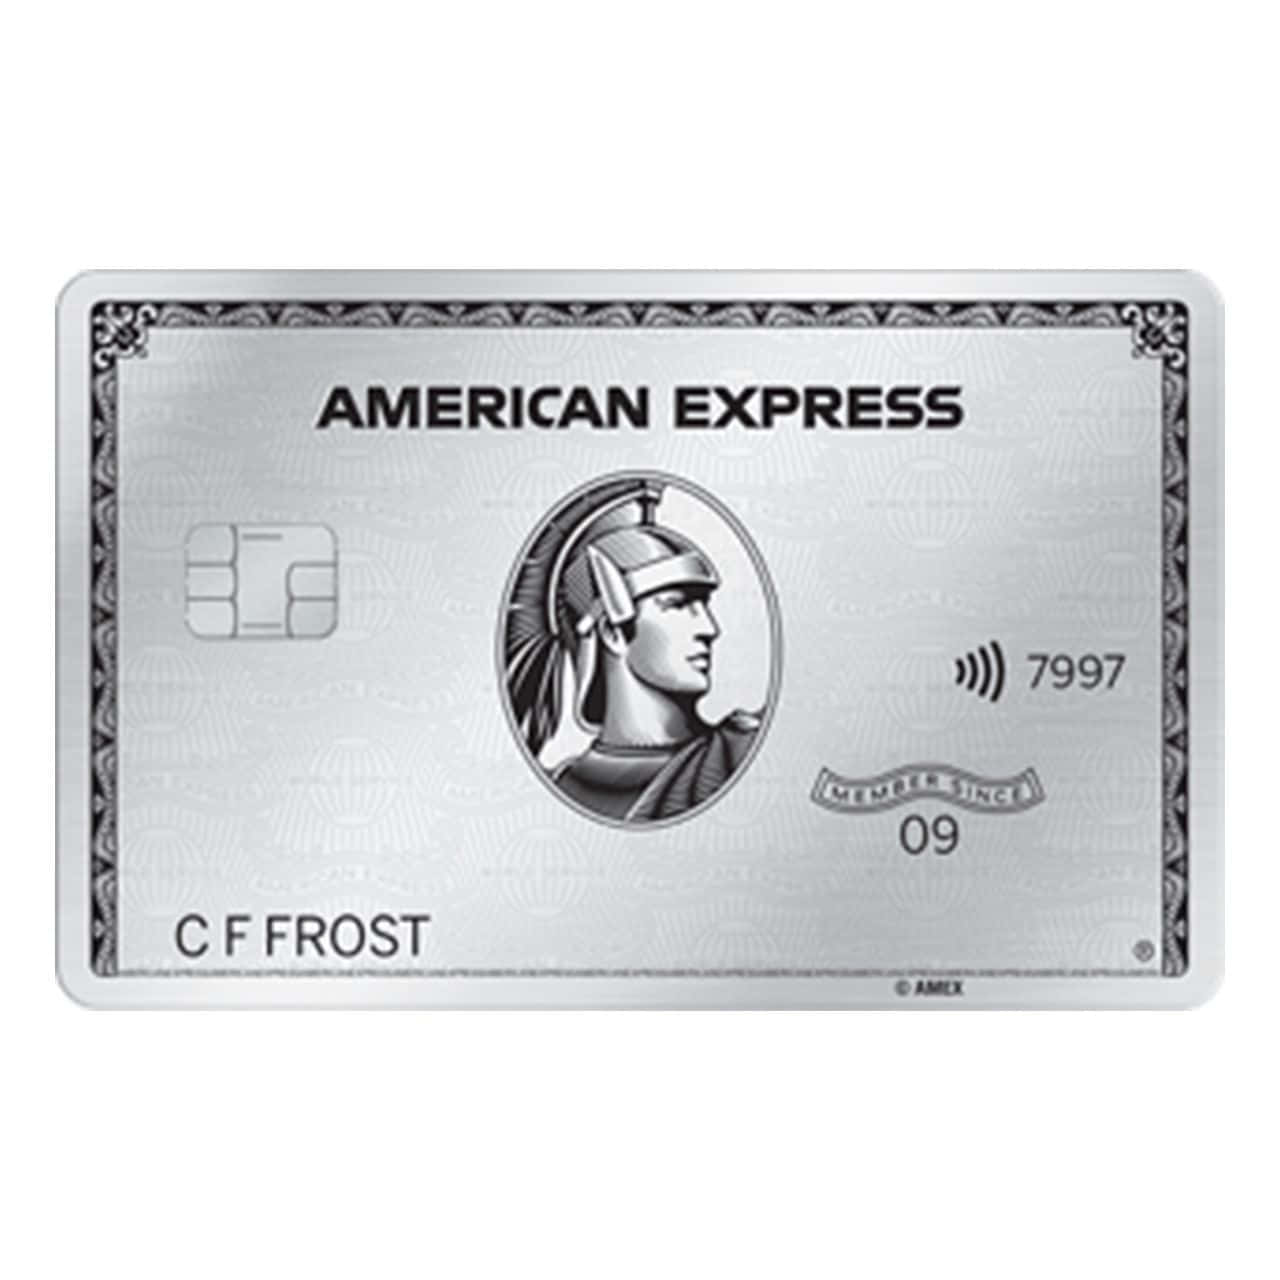 Känndig Trygg Med American Express.